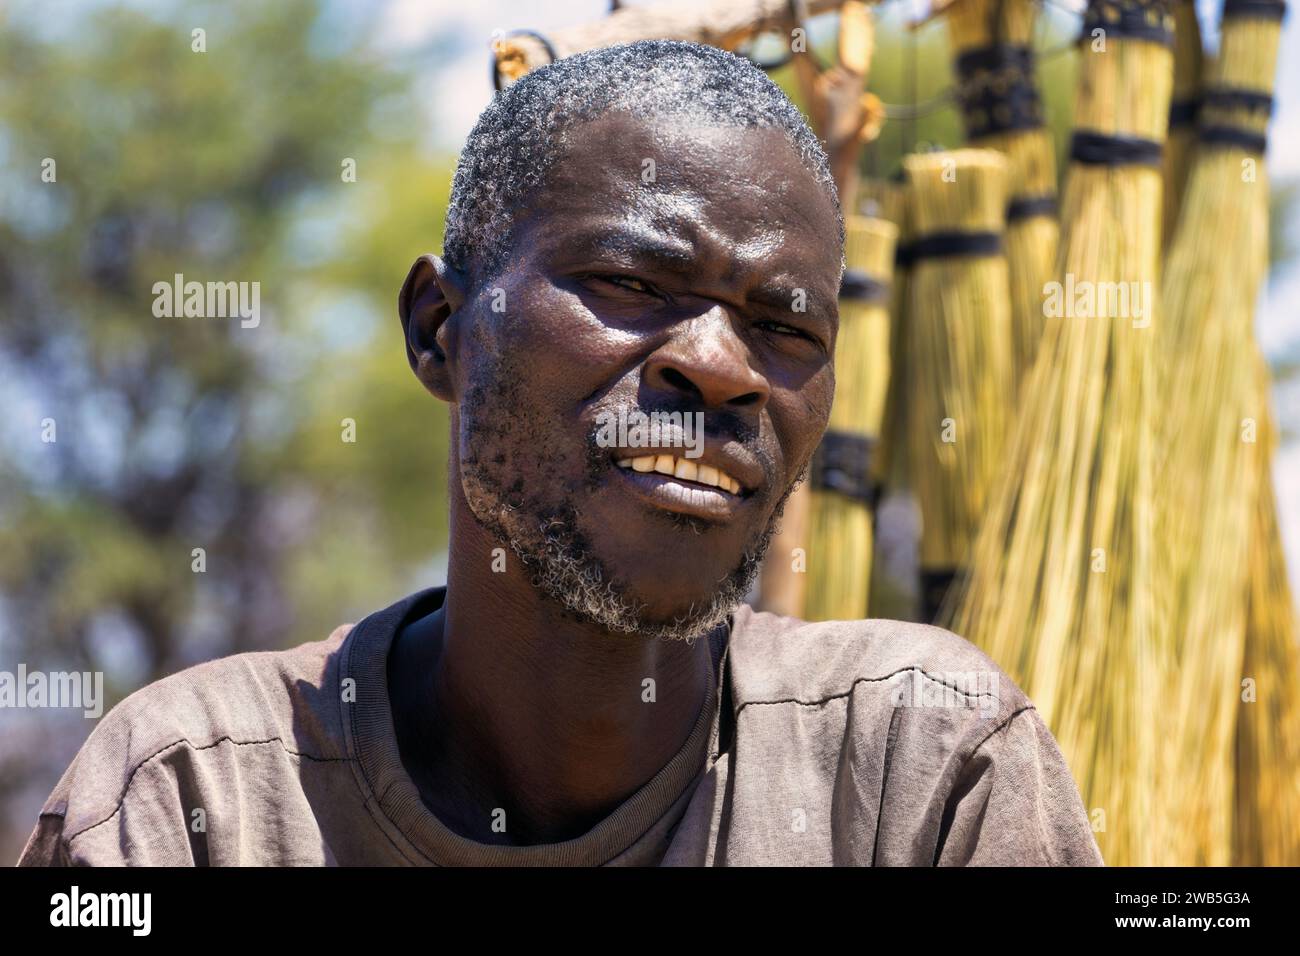 portrait d'un bel homme africain d'âge moyen avec des traits masculins, debout à l'extérieur vendant des balais sur le bord de la route Banque D'Images